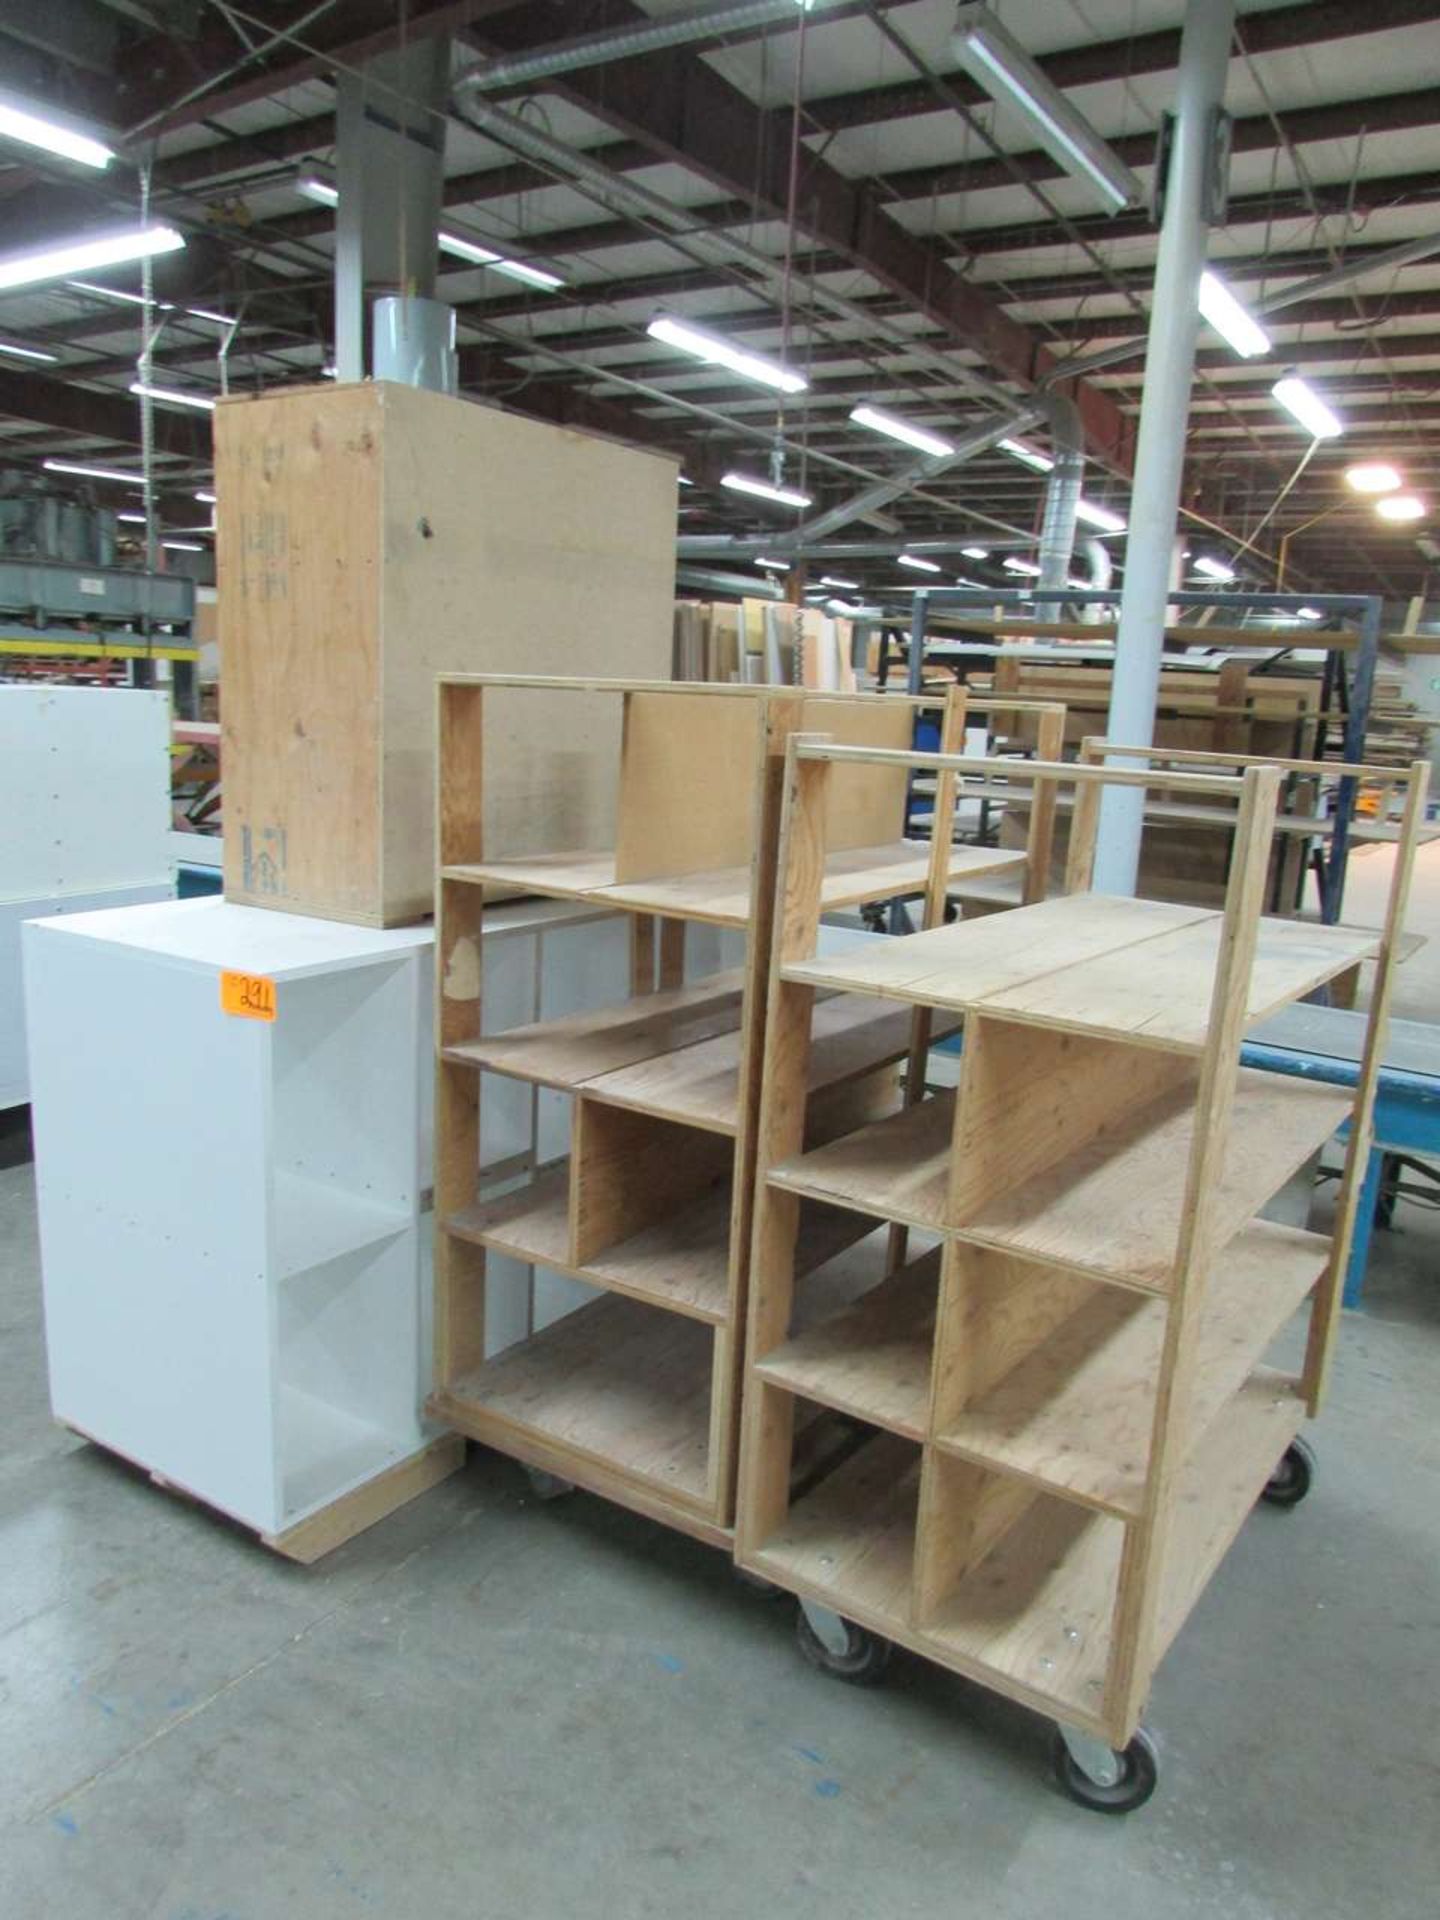 (2) Material Storage Carts